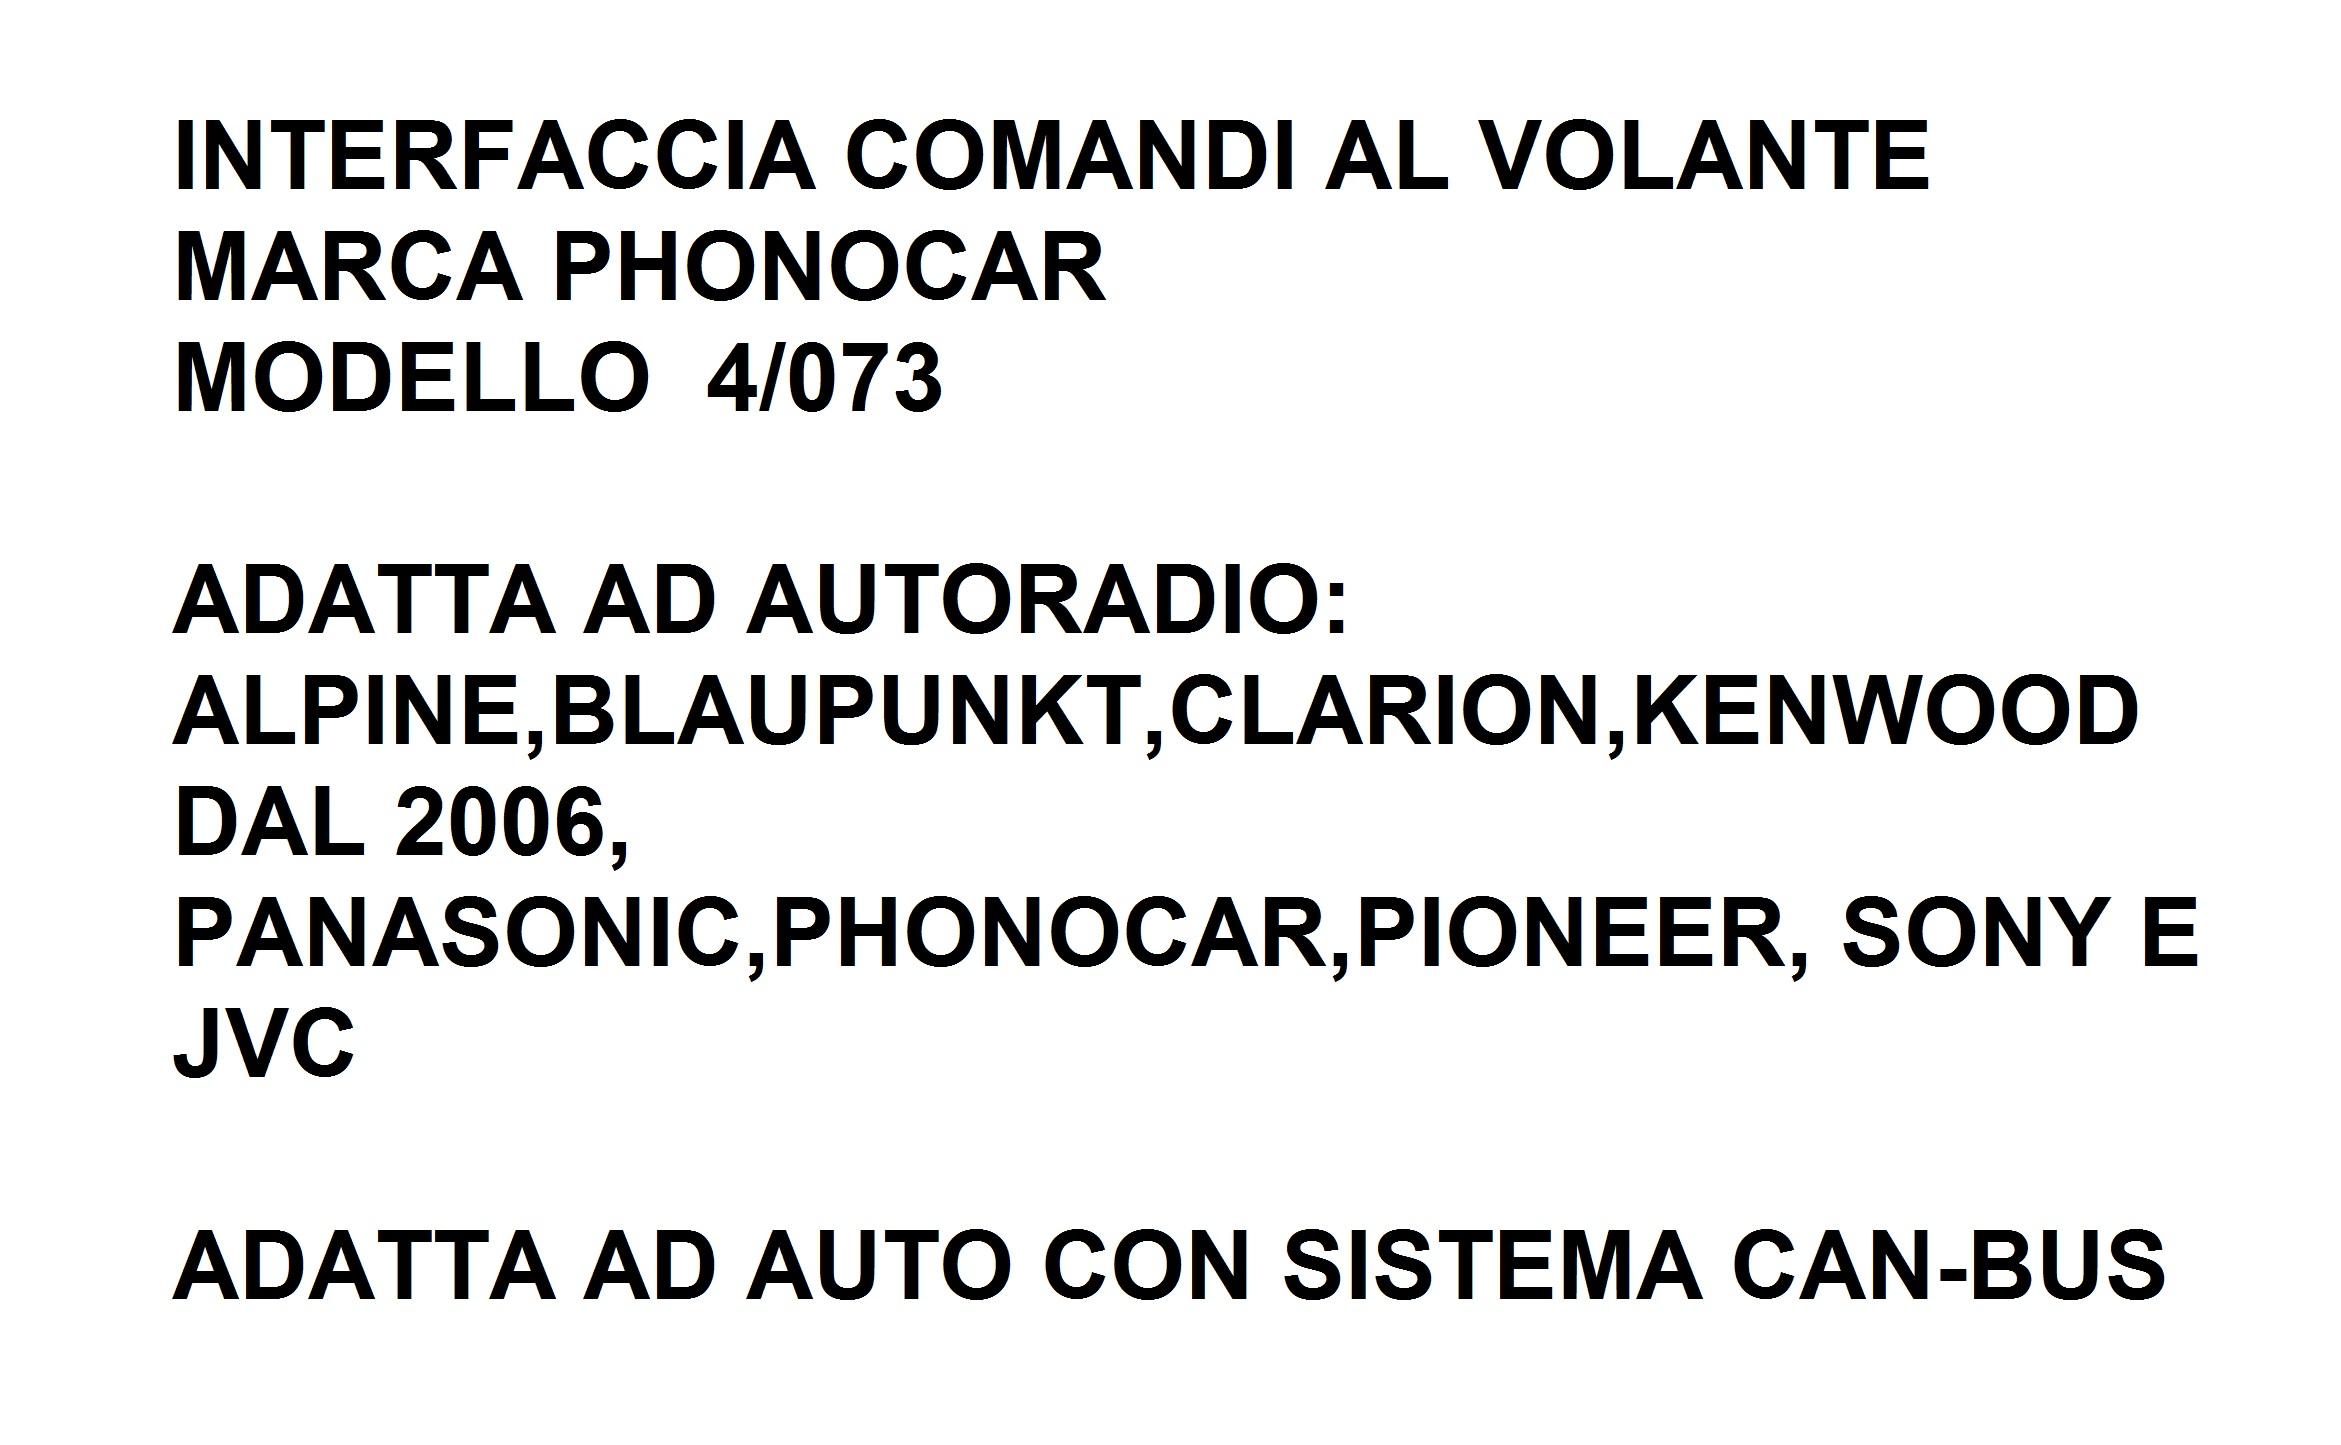 9550 - VOLVO V70 2004-2007 INTERFACCIA CAN-BUS&COMANDI AL VOLANTE 4/073 PHONOCAR